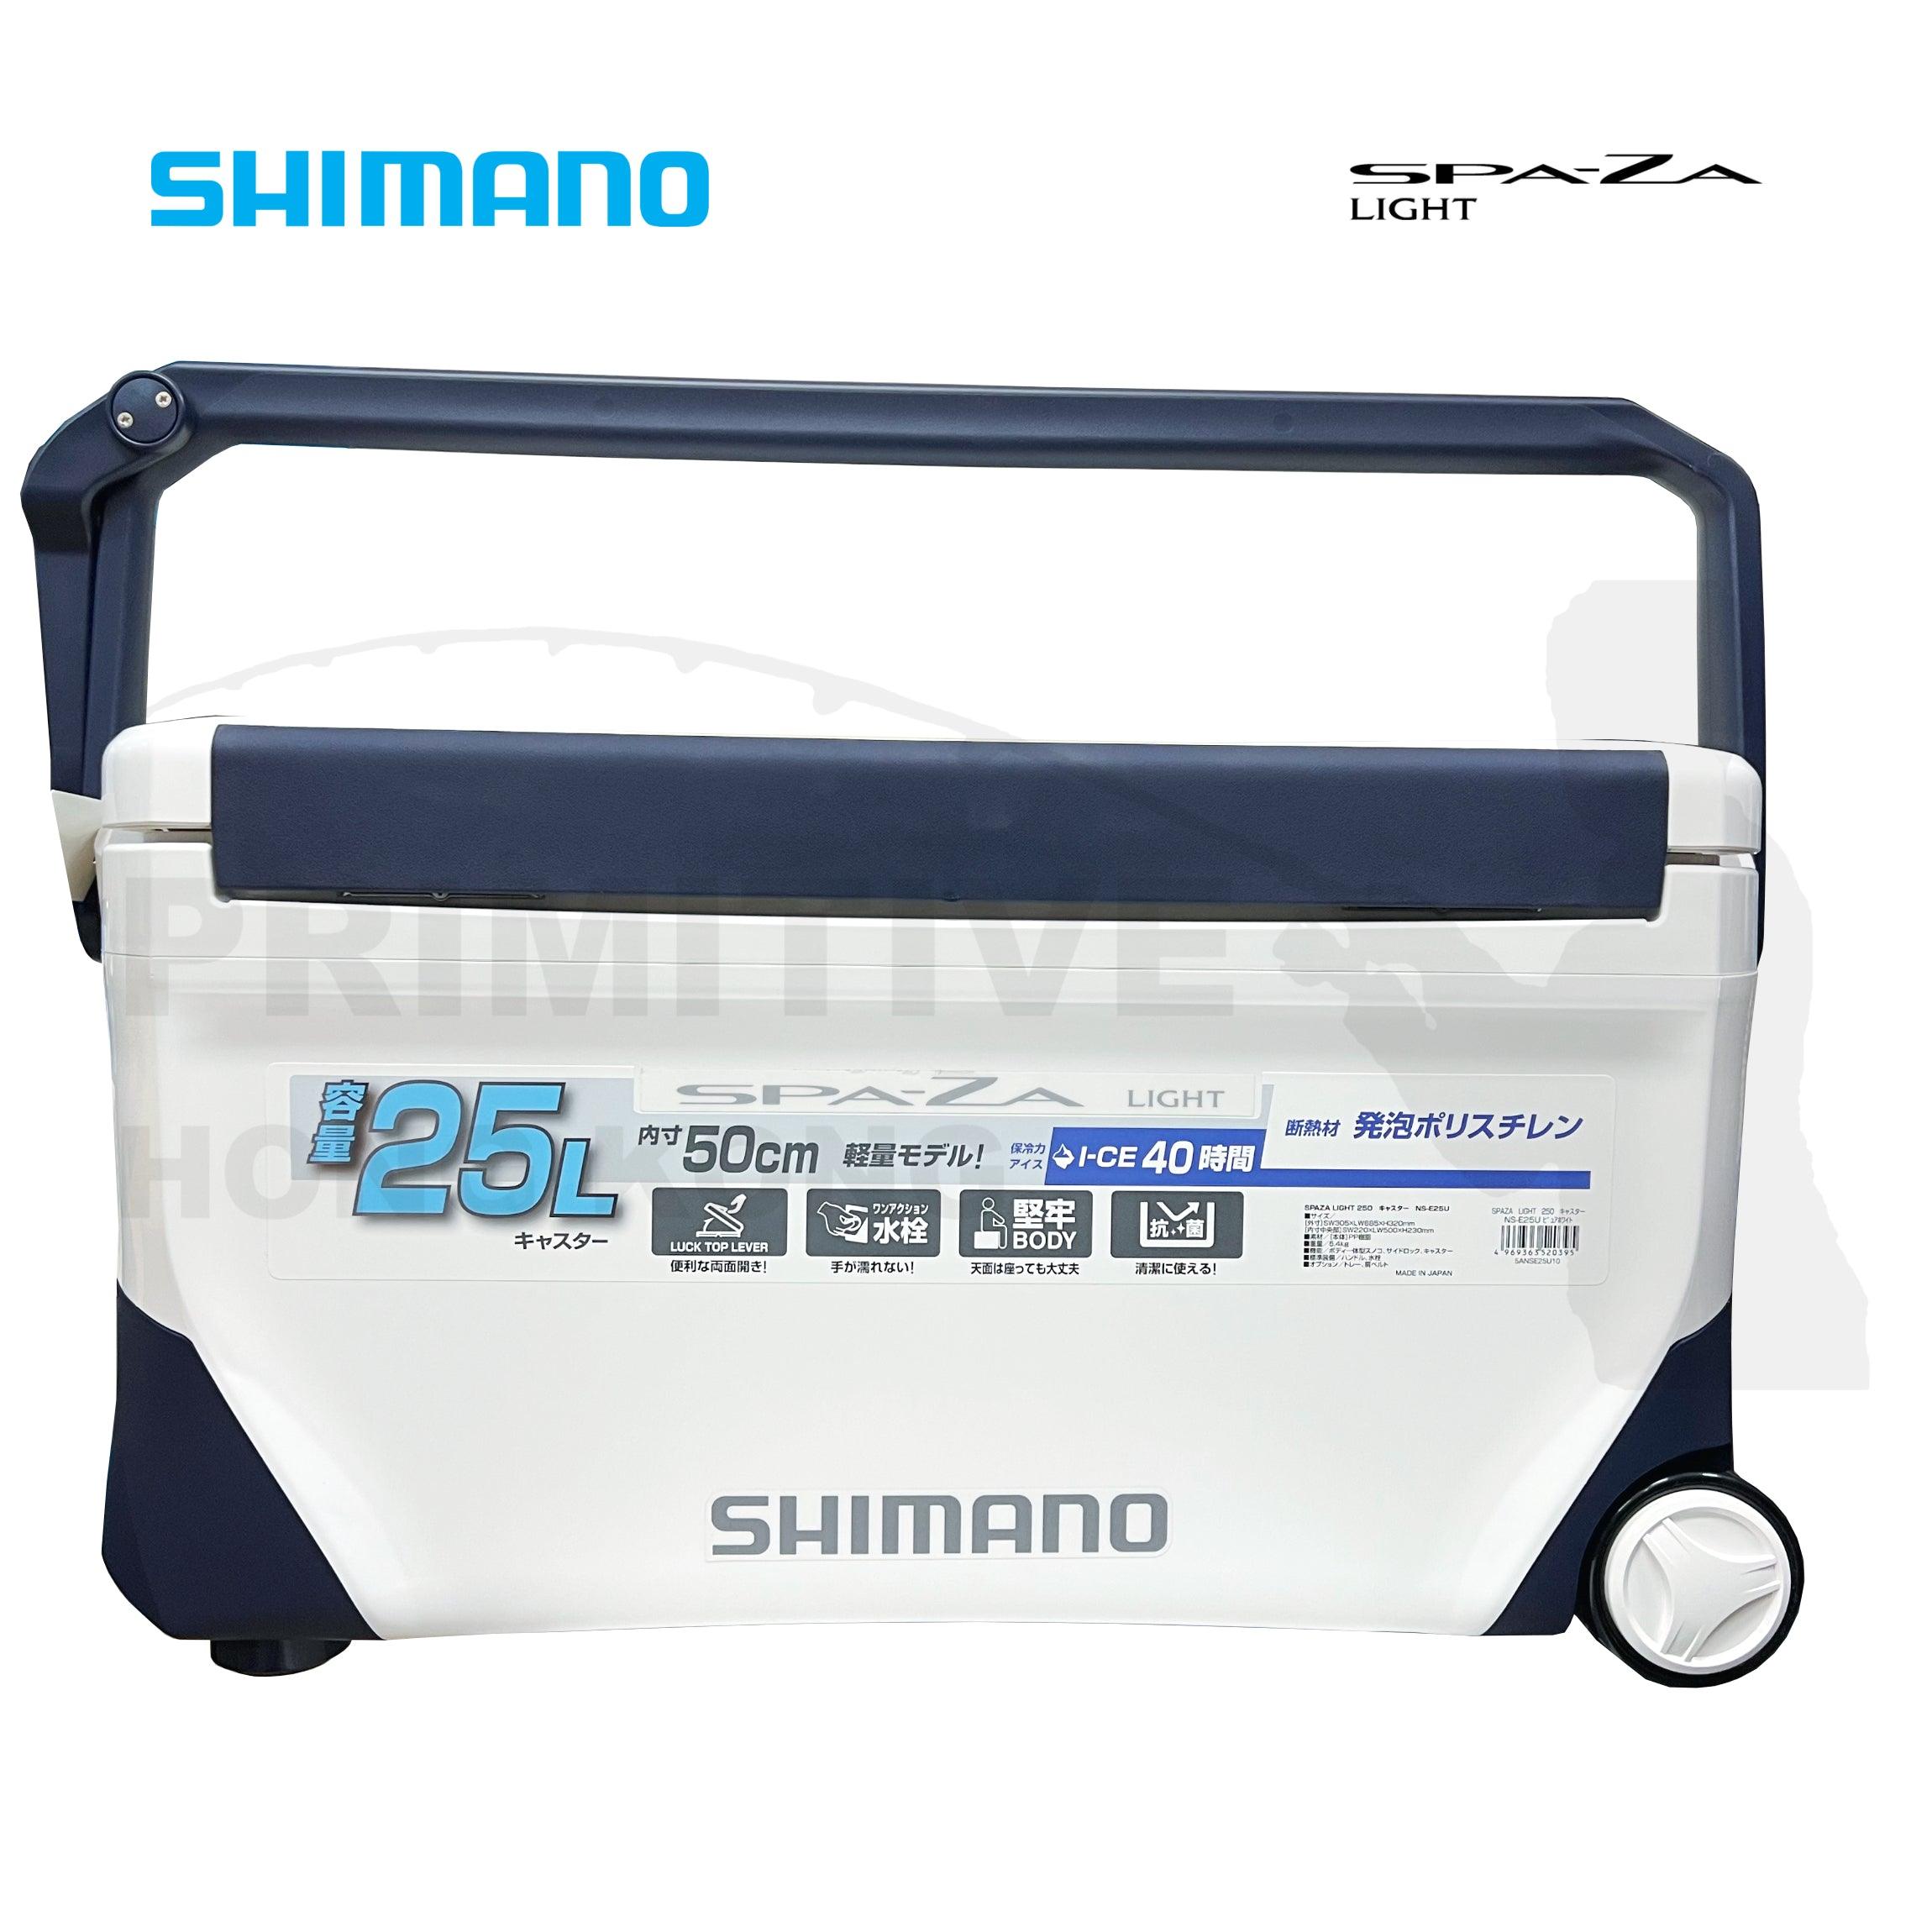 優先配送 Shimano SPA-ZA LIGHT 250